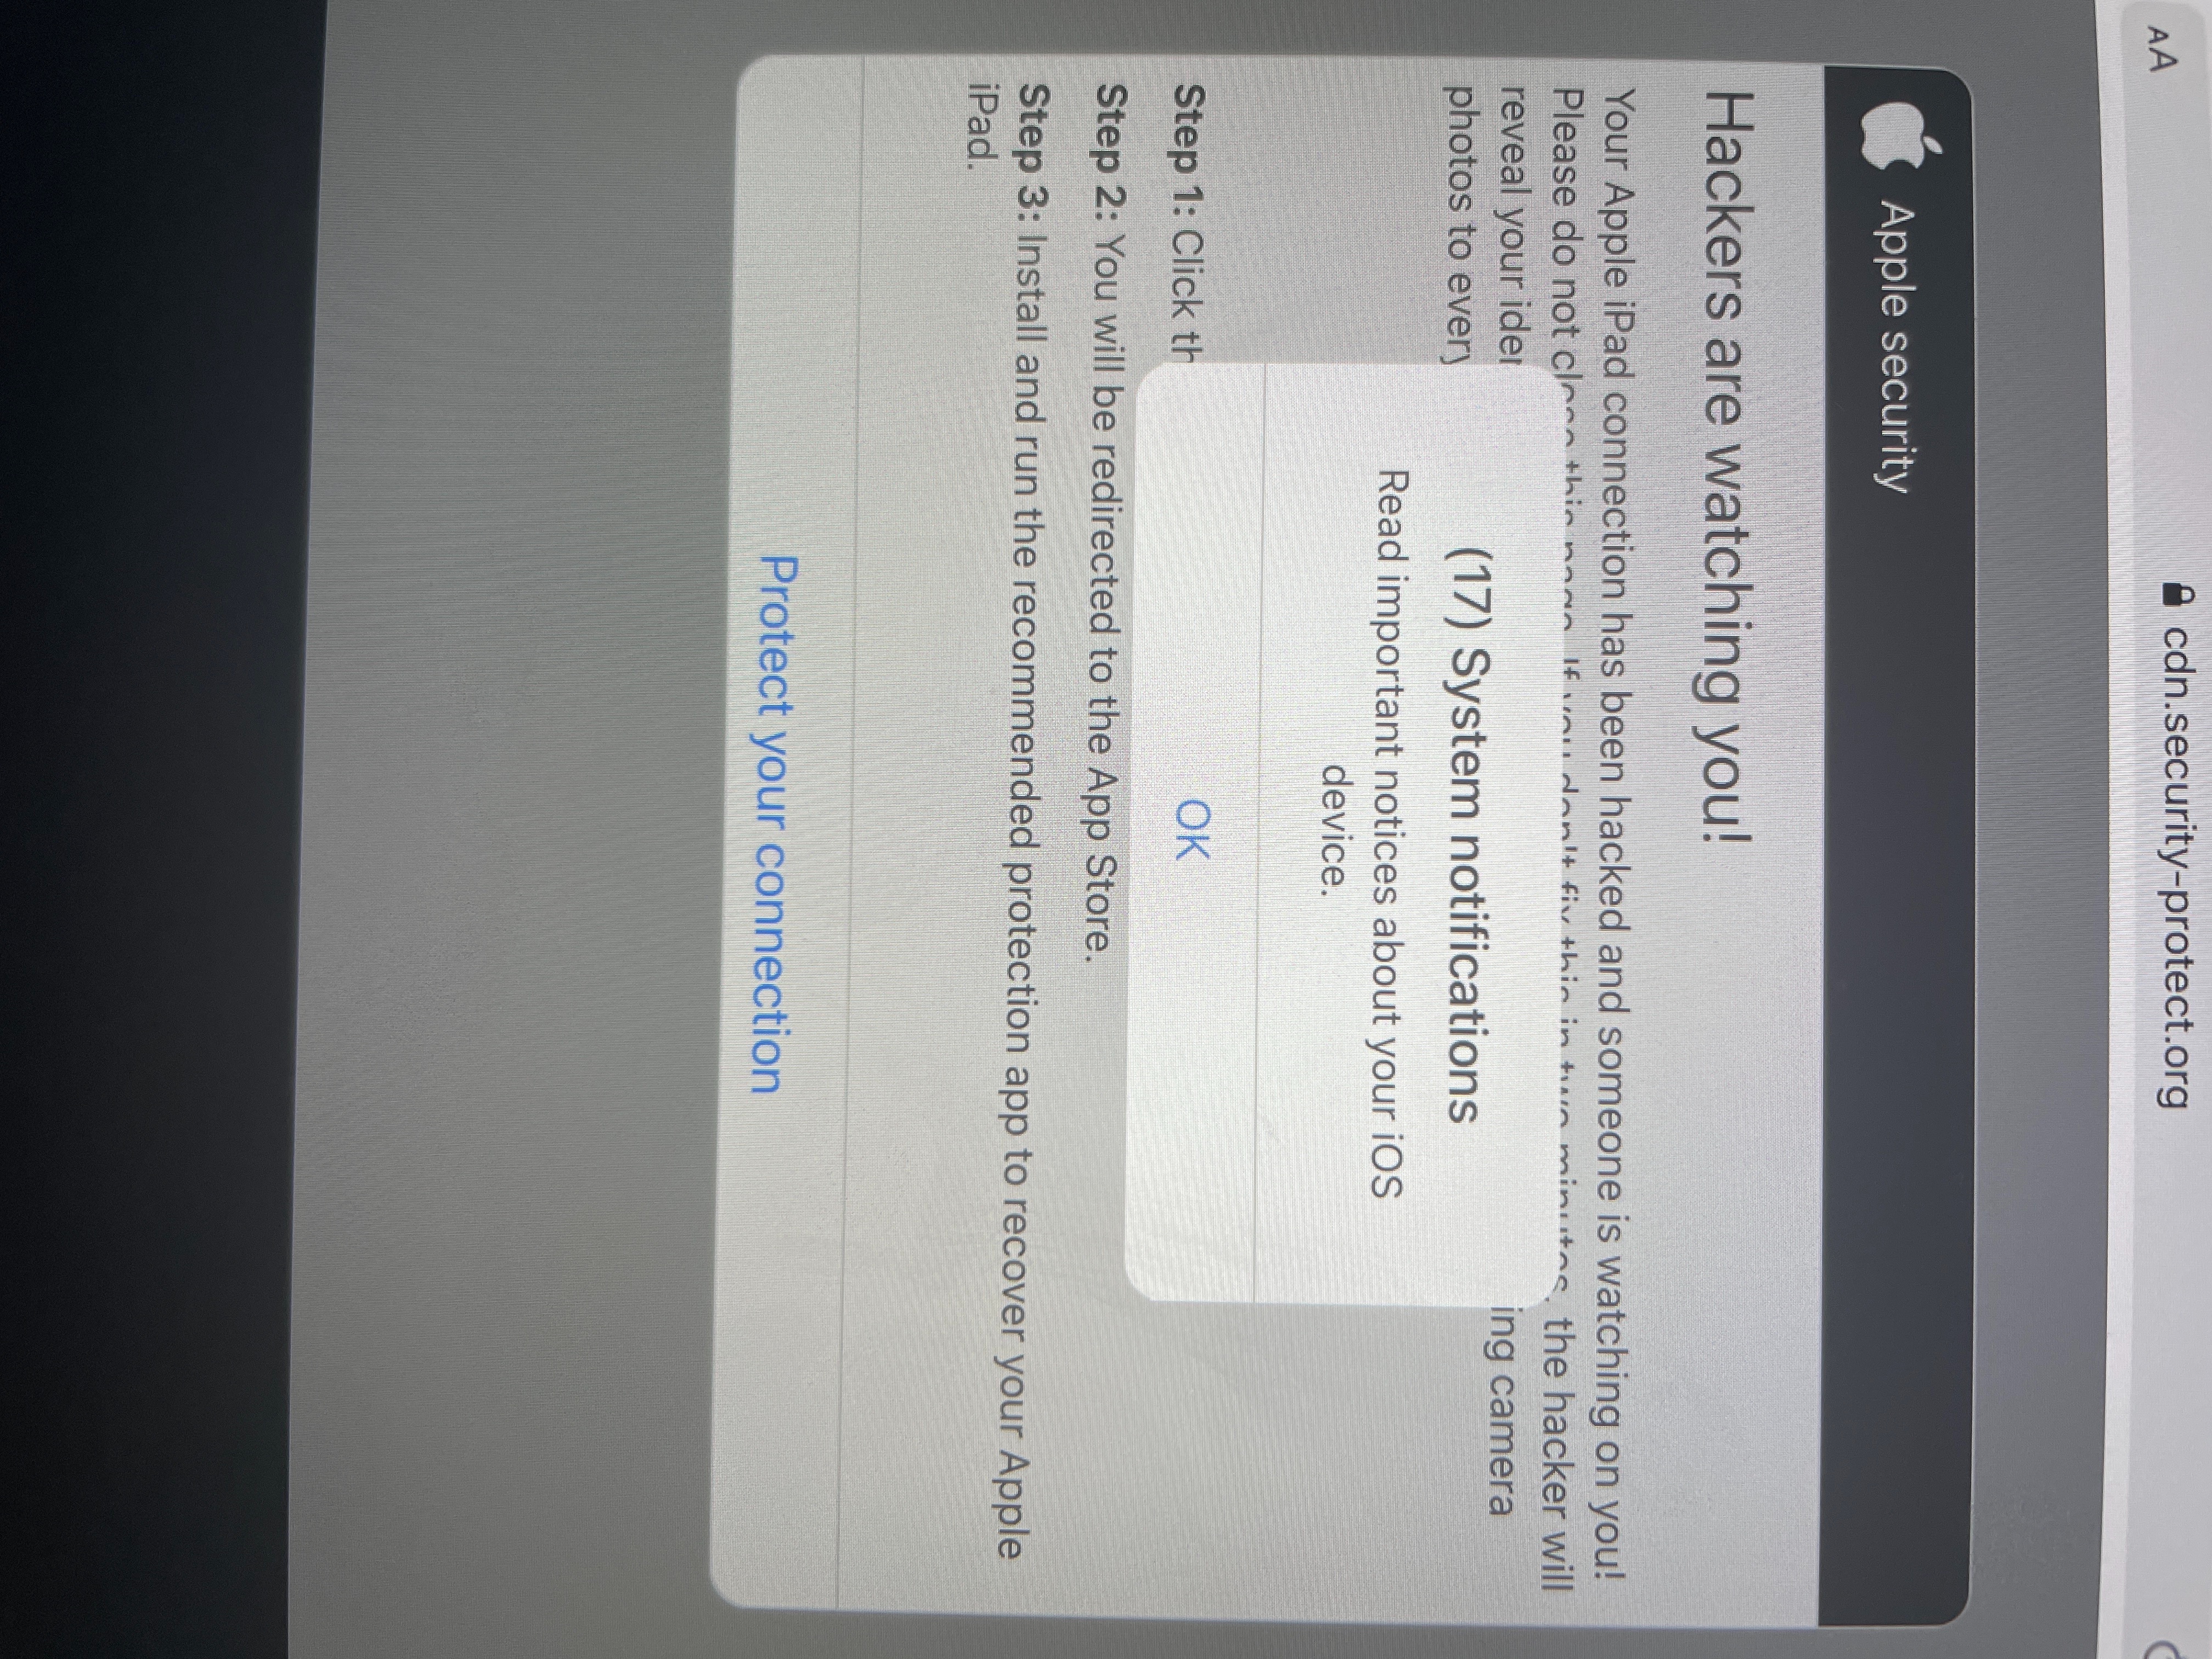 Fail to login on iPad - Bug Cemetary - Anytype Community